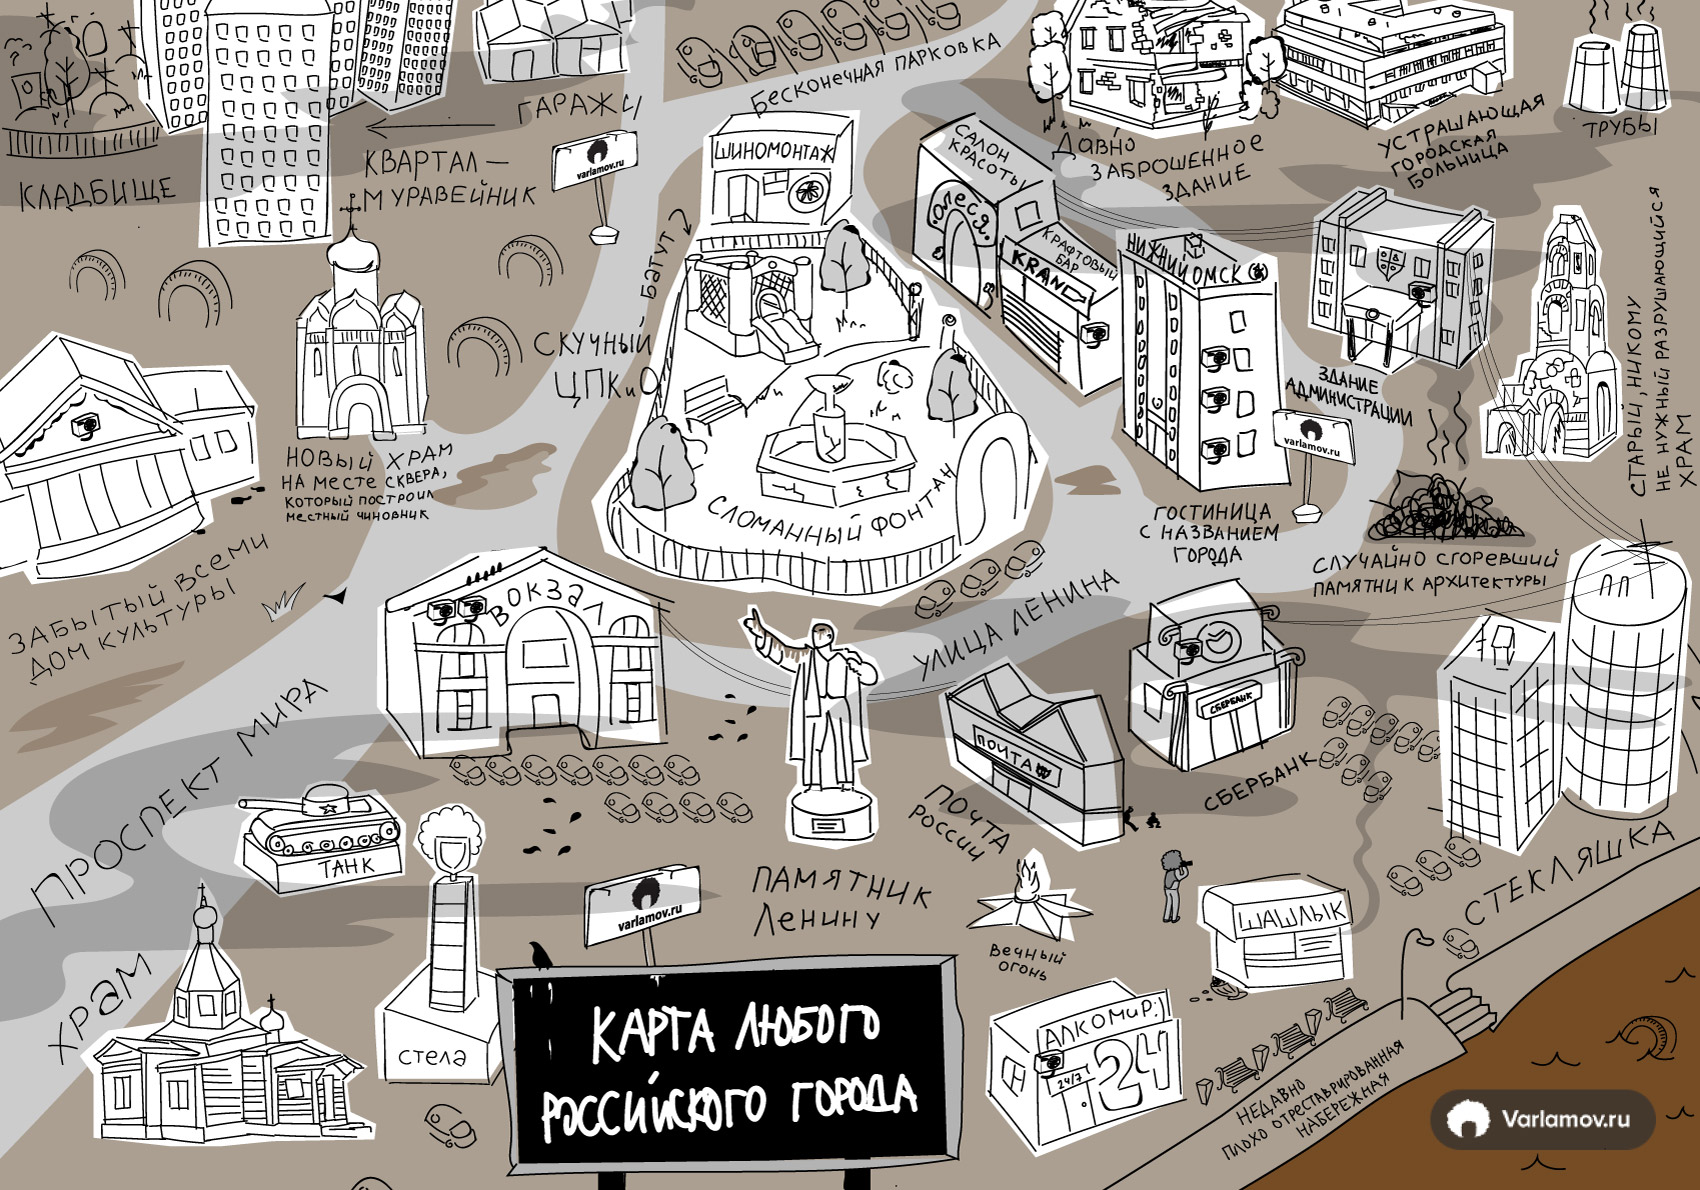 Карта любого города России России, города, городов, карте, можно, нарисовать, потеряет, карта, поздно, актуальность, когданибудь, вообще, увидят, надеюсь, Очень, крупного, любого, Реальность, процентов, будет